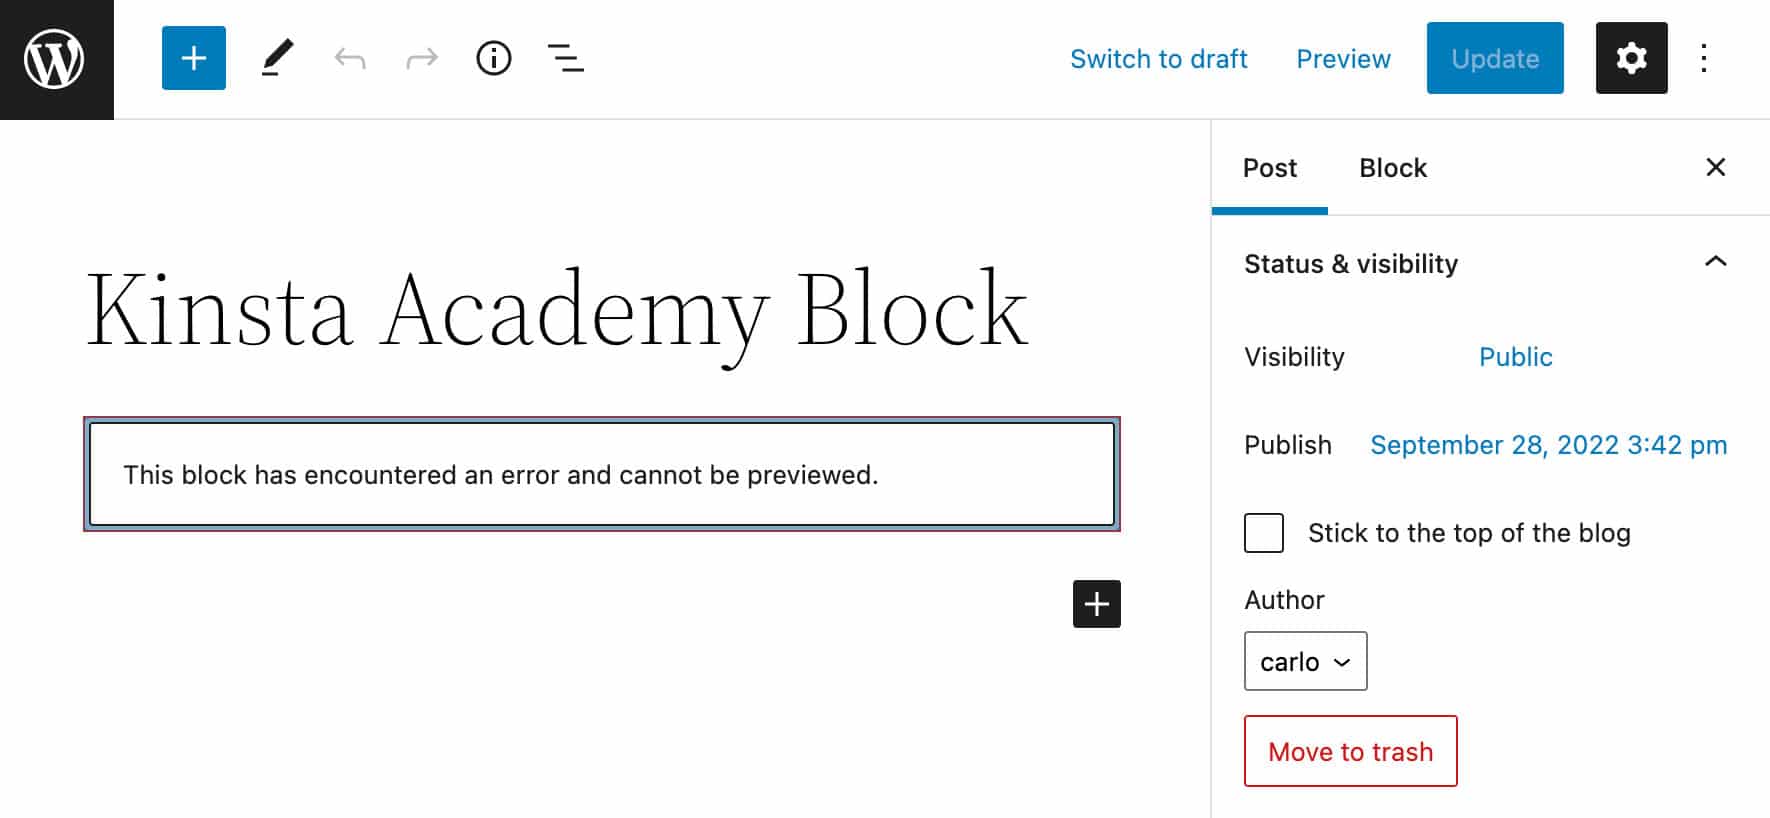 El bloque muestra un mensaje de error